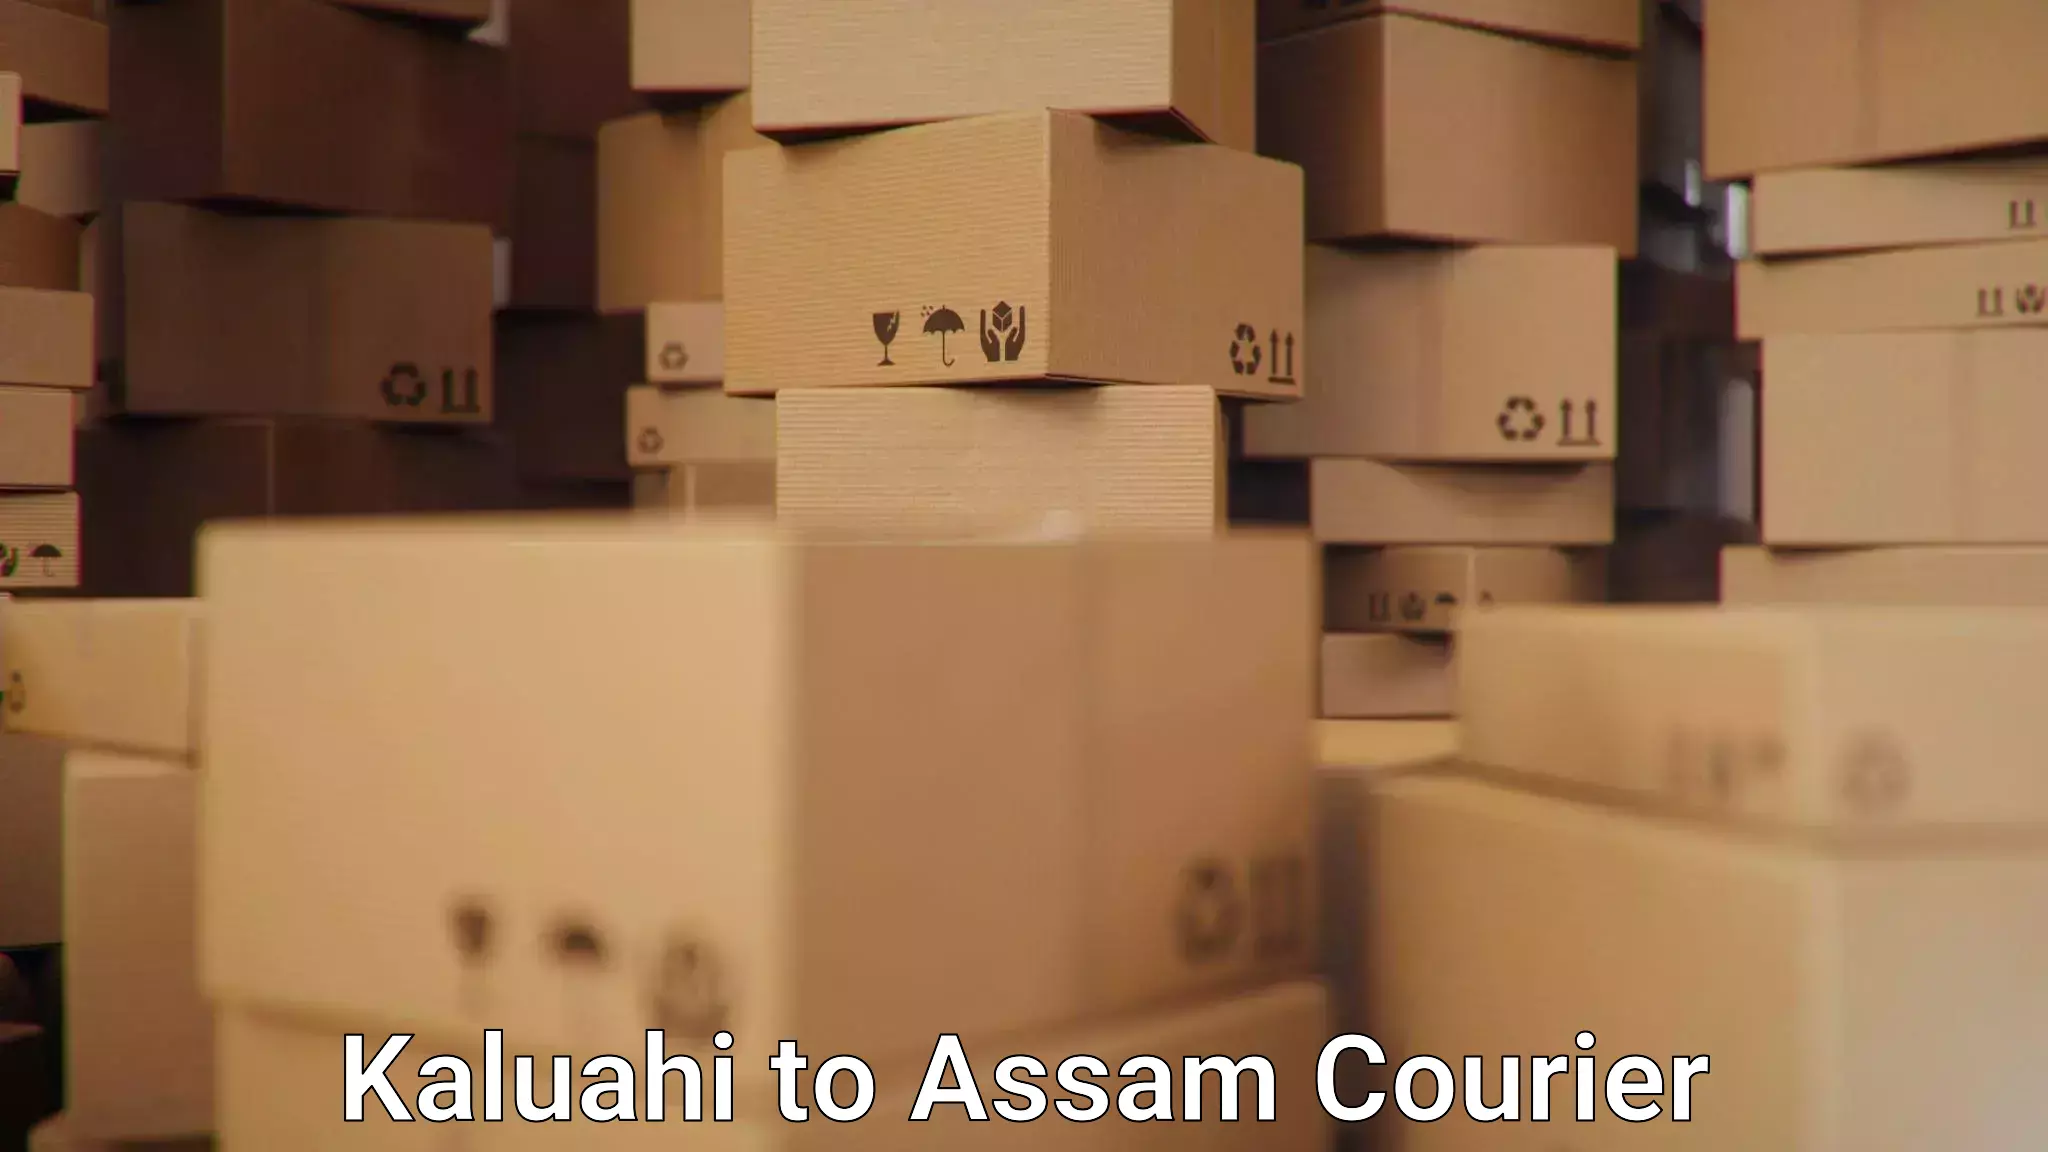 24/7 courier service Kaluahi to Assam